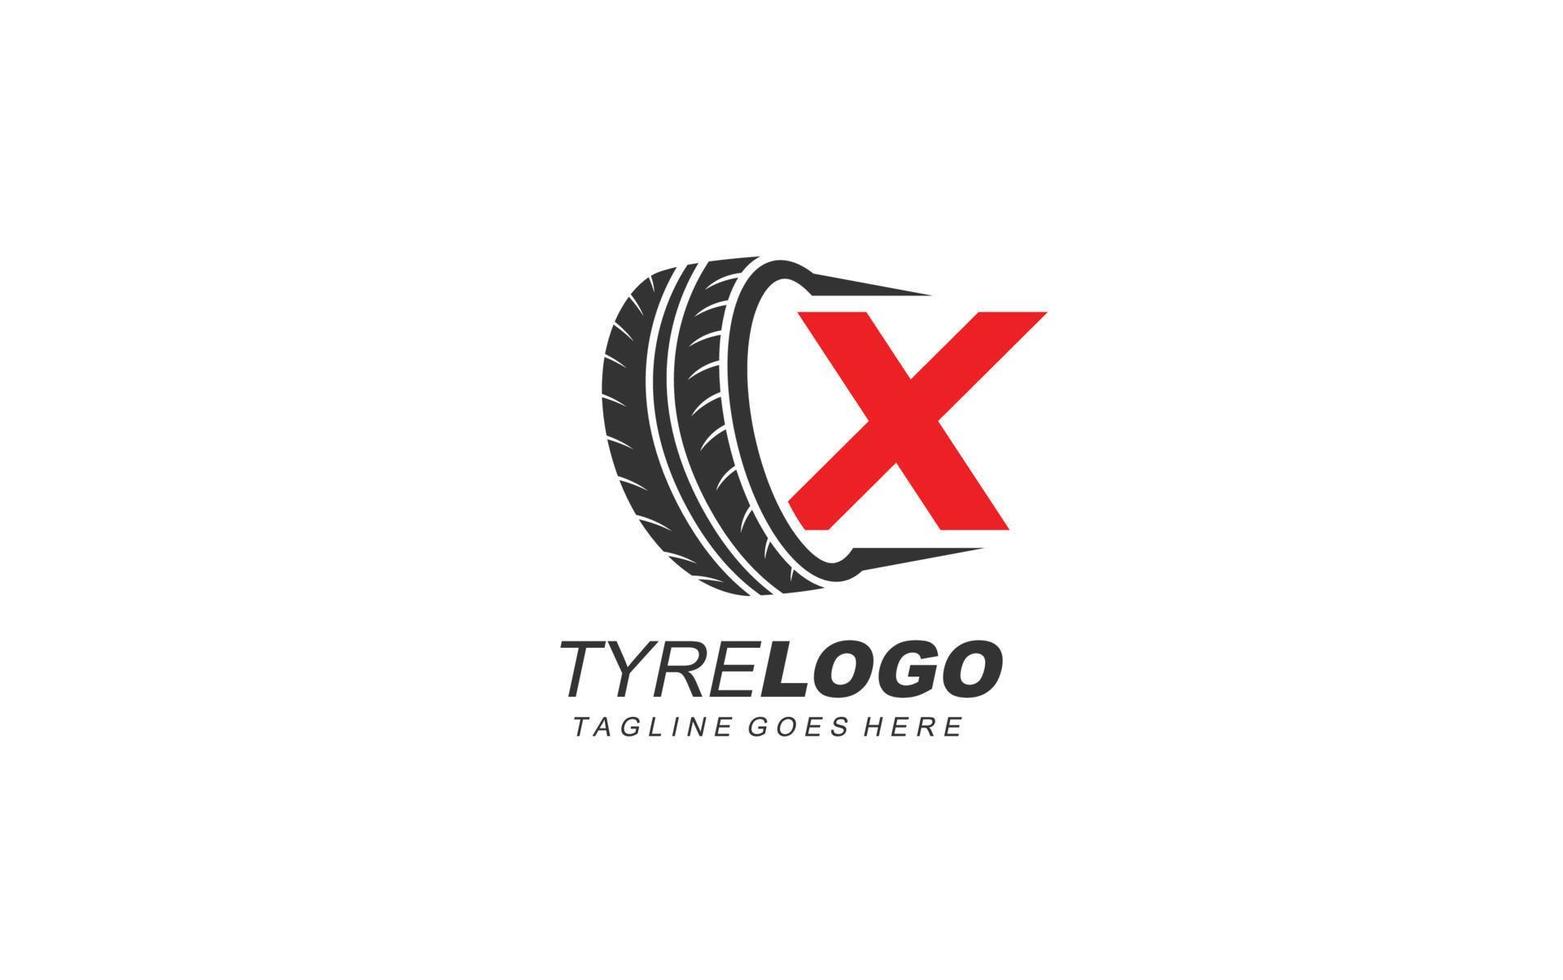 x pneu de logotipo para empresa de branding. ilustração vetorial de modelo de roda para sua marca. vetor